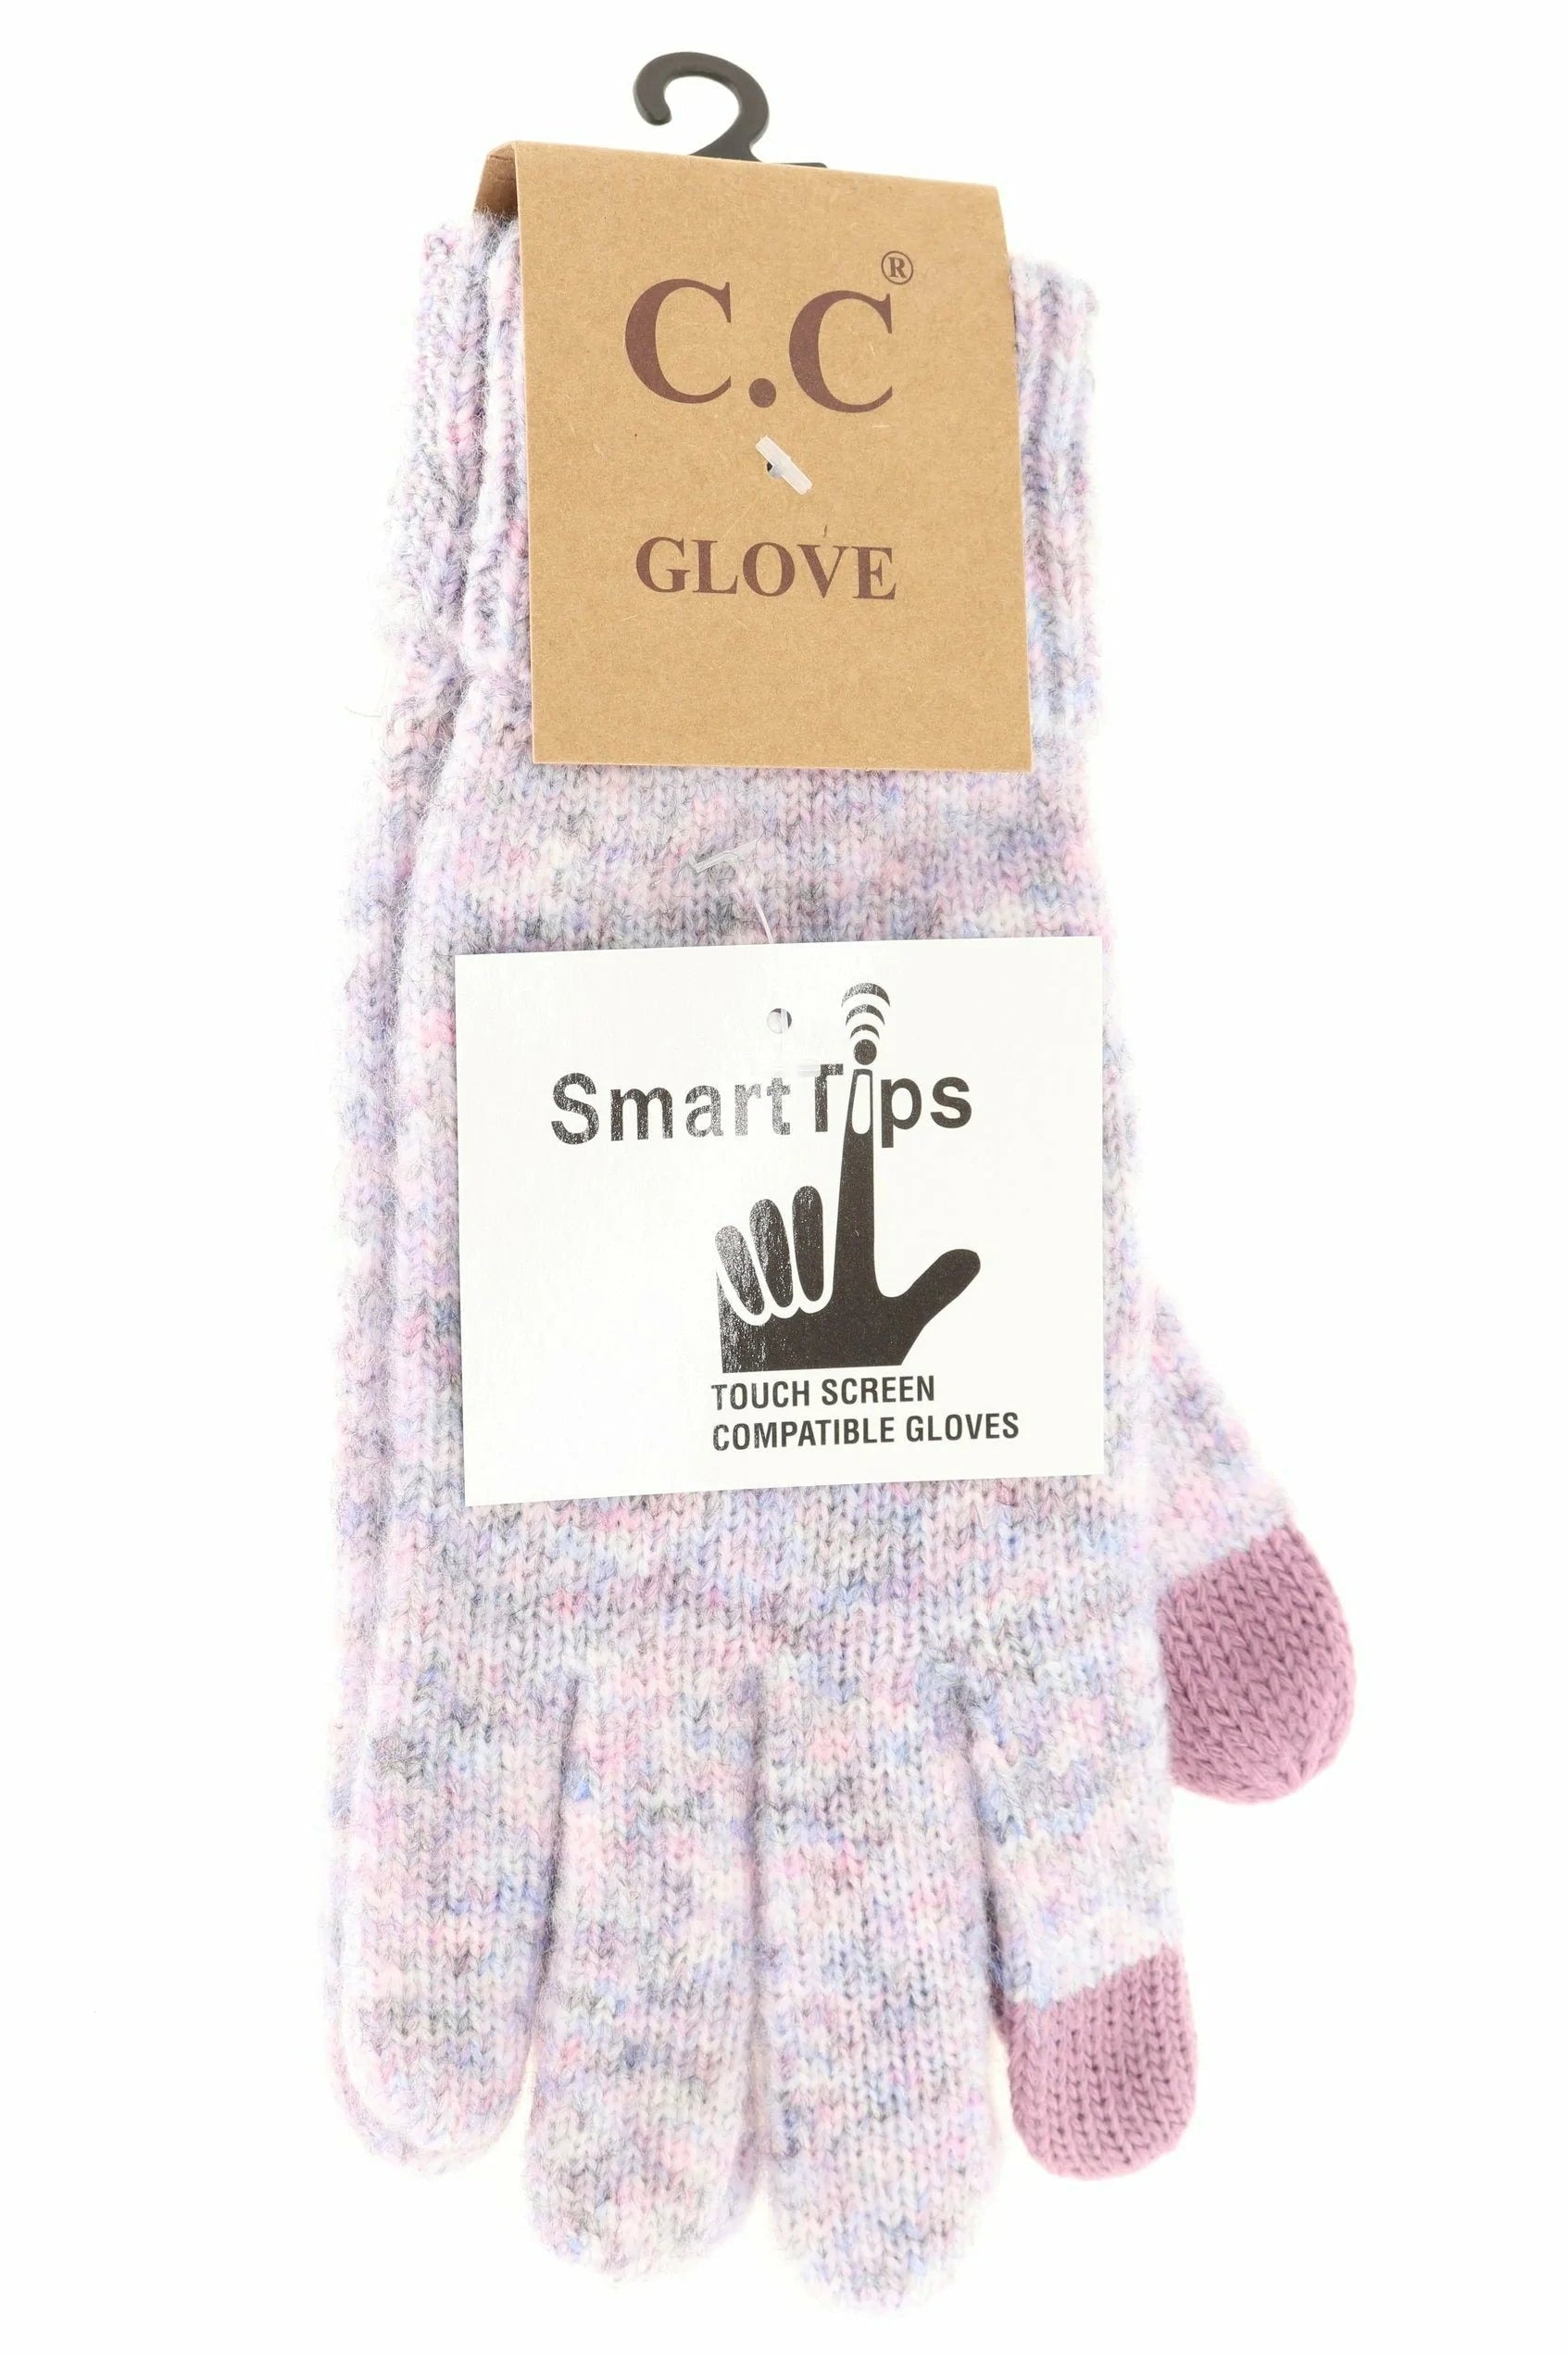 Soft Ribbed Knit Glove Lavender Multi Lavender Multi  gloves CC Brand Beanies- Tilden Co.